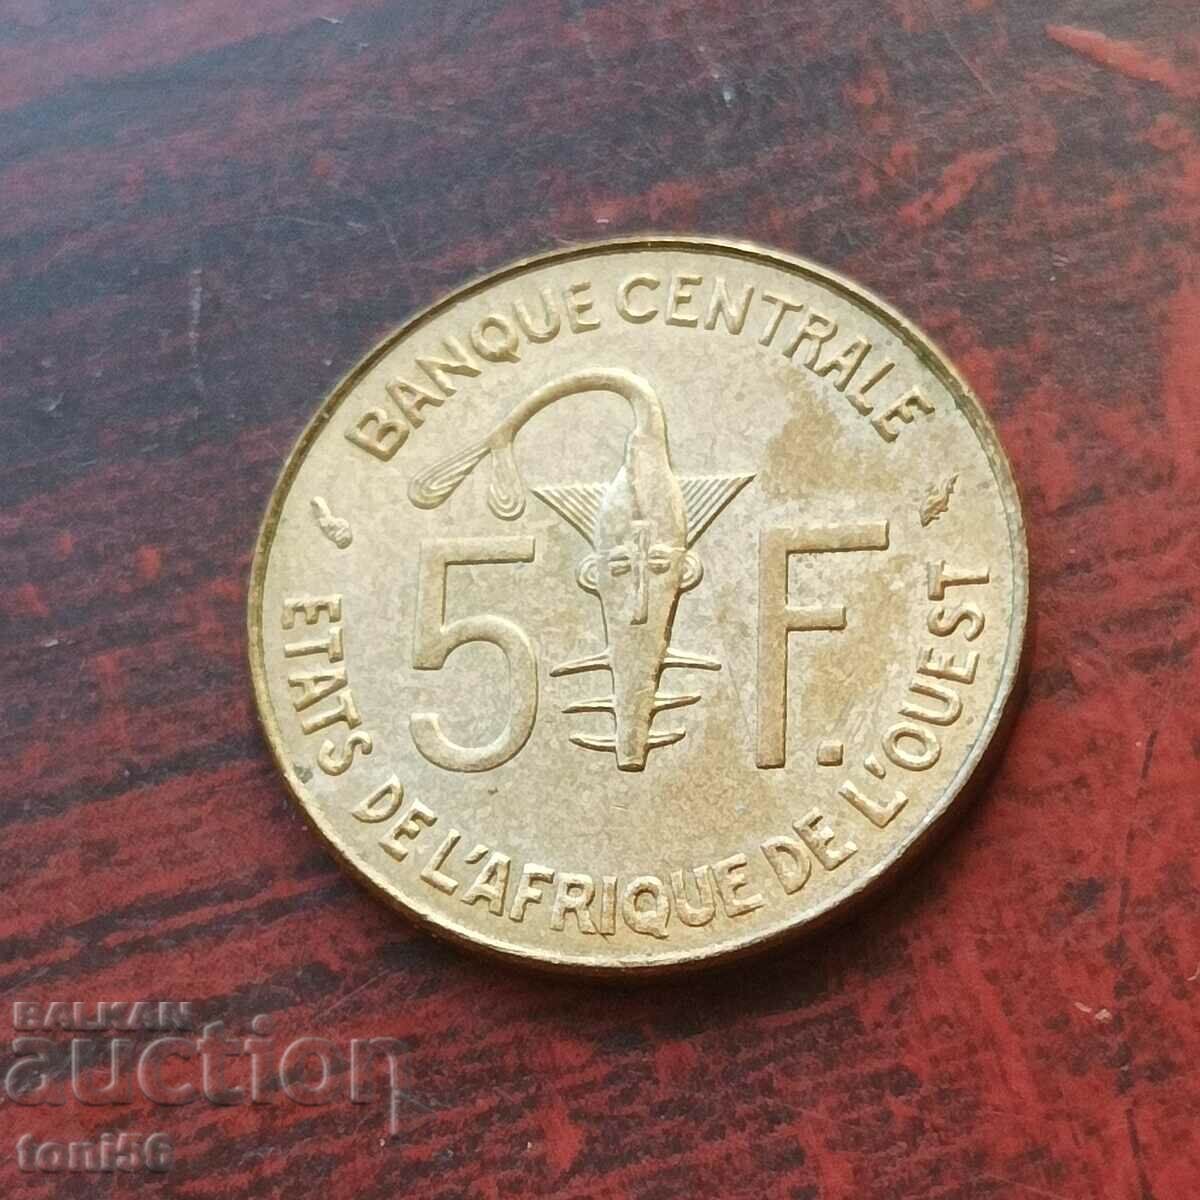 Africa de Vest 5 franci 1975 UNC